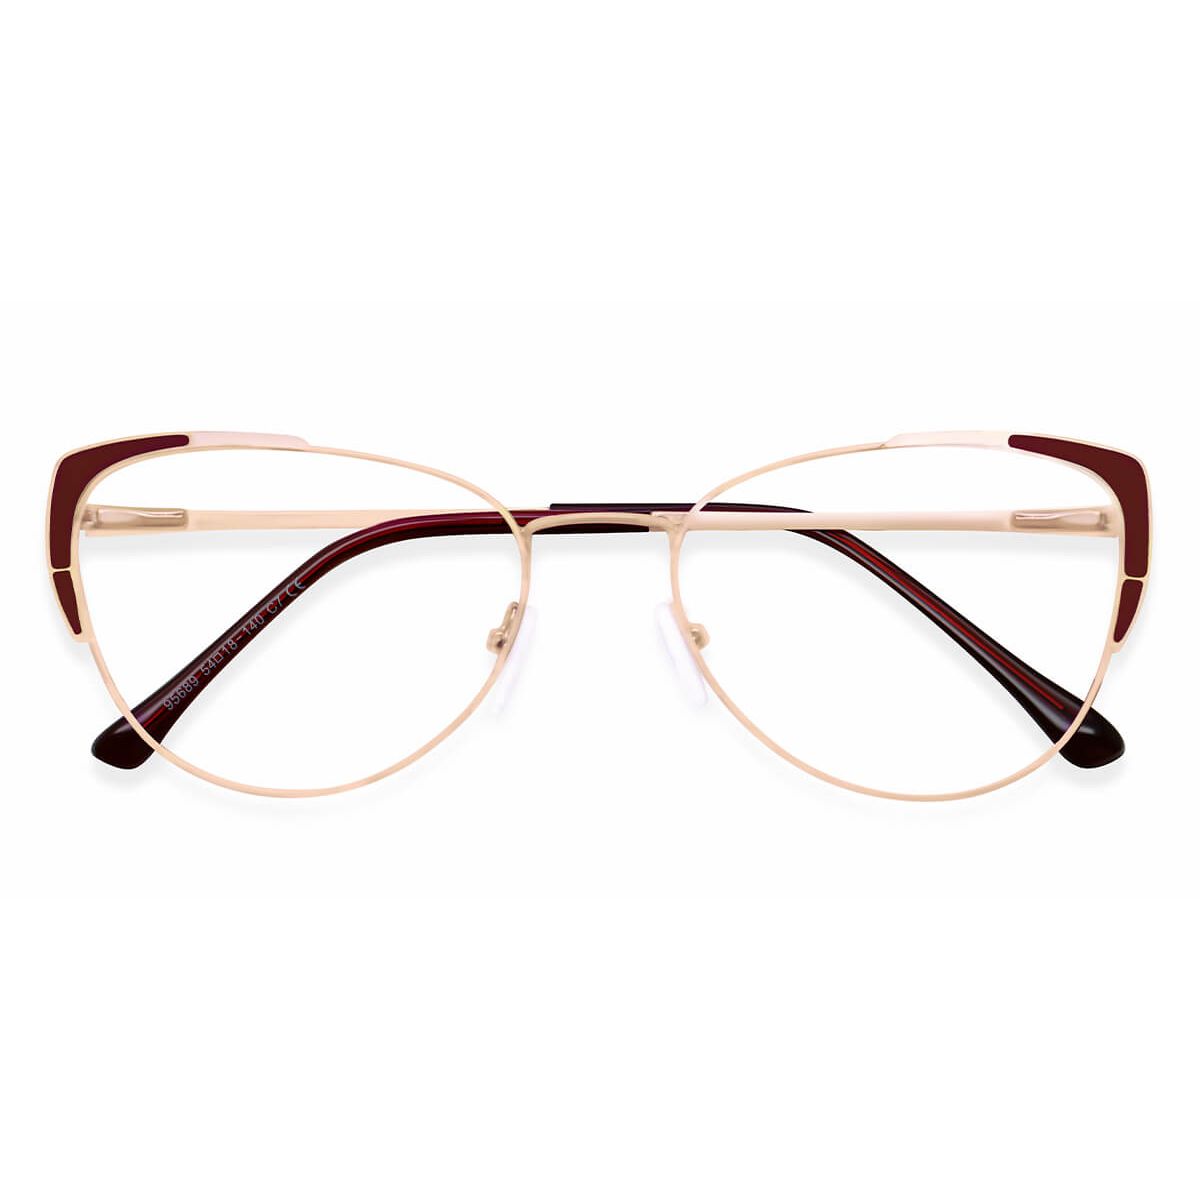 95689 Cat-eye Red Eyeglasses Frames | Leoptique